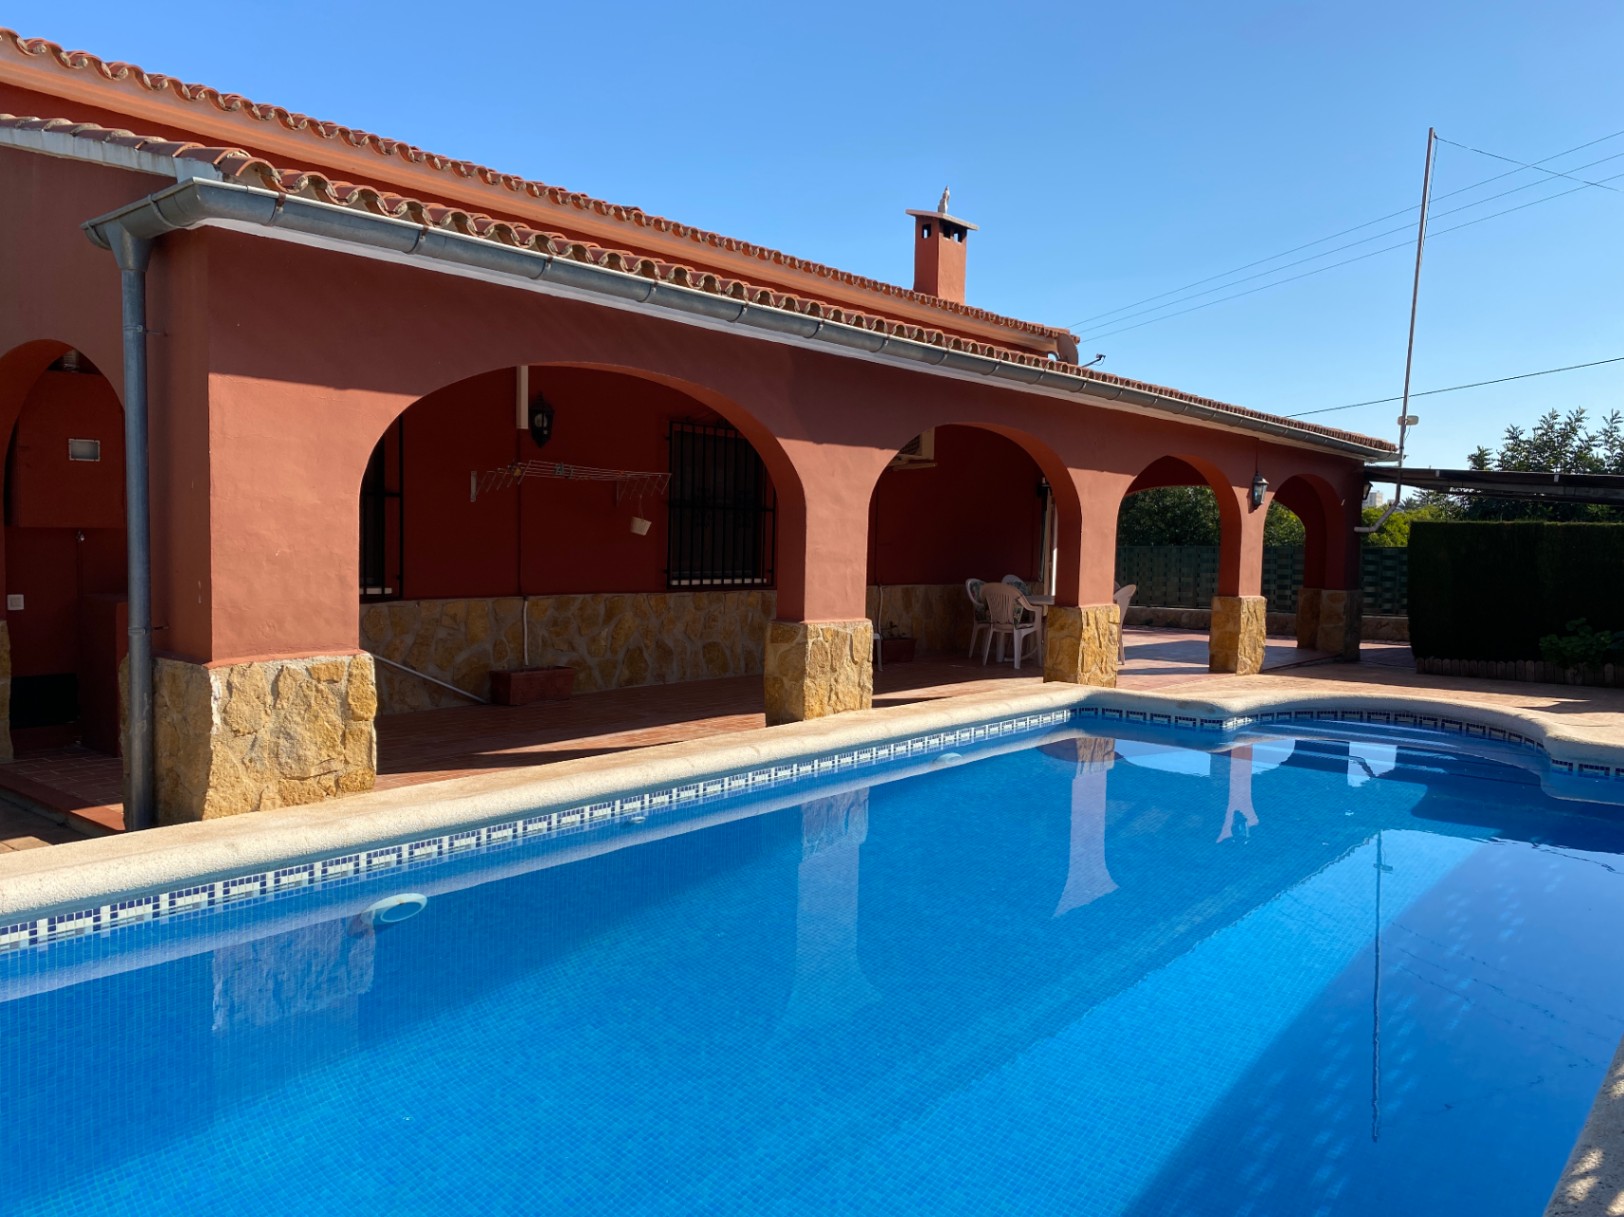 Schöne Finca im spanischen Stil mit Pool, BB, Garage, Carport, Klimaanlage, in der Nähe der Stadt.